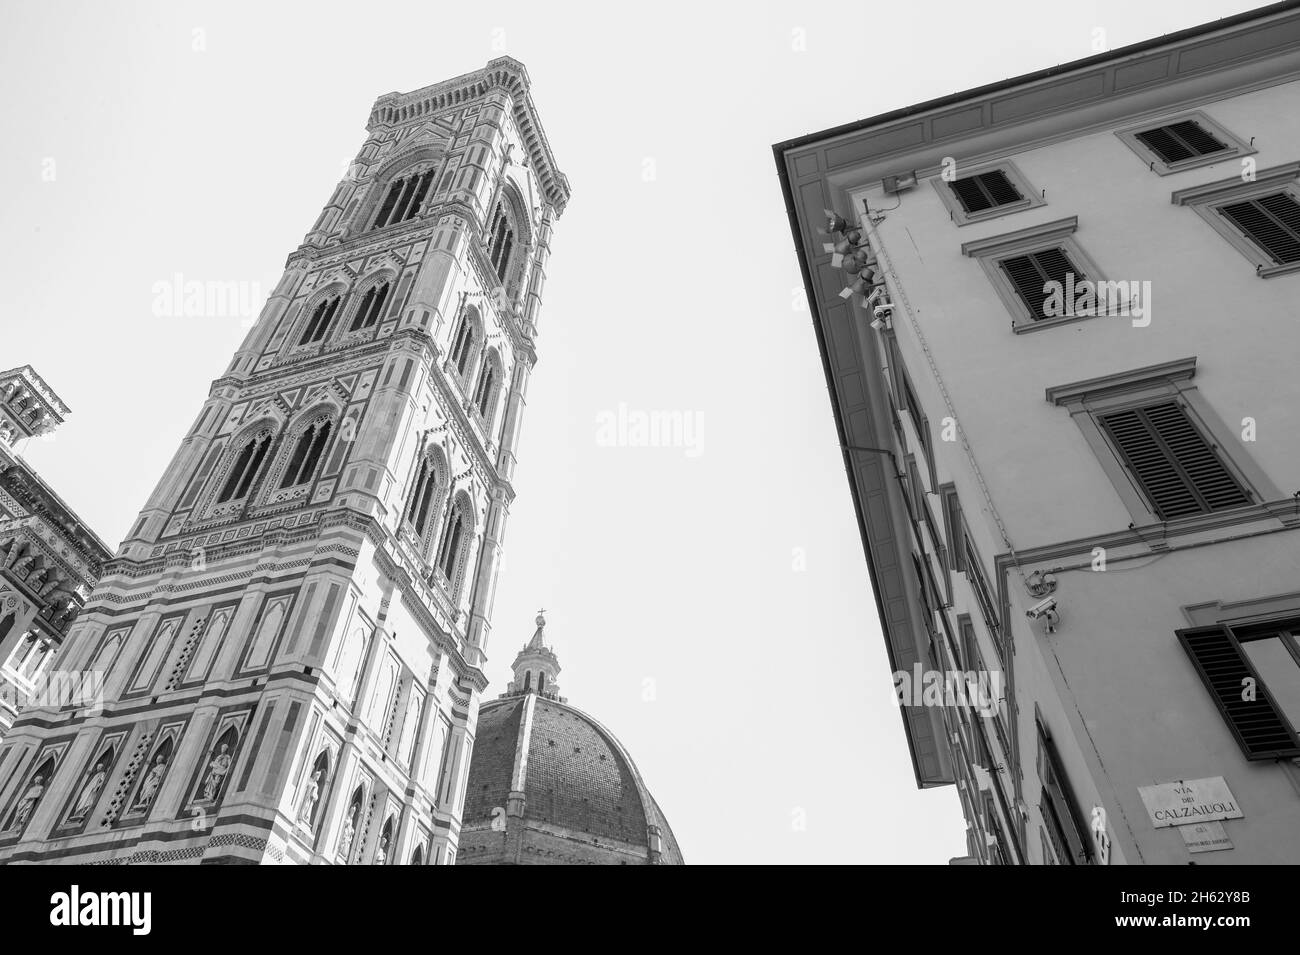 cathédrale de florence, anciennement la cattedrale di santa maria del fiore et le campanile de giotto, toscane, italie Banque D'Images